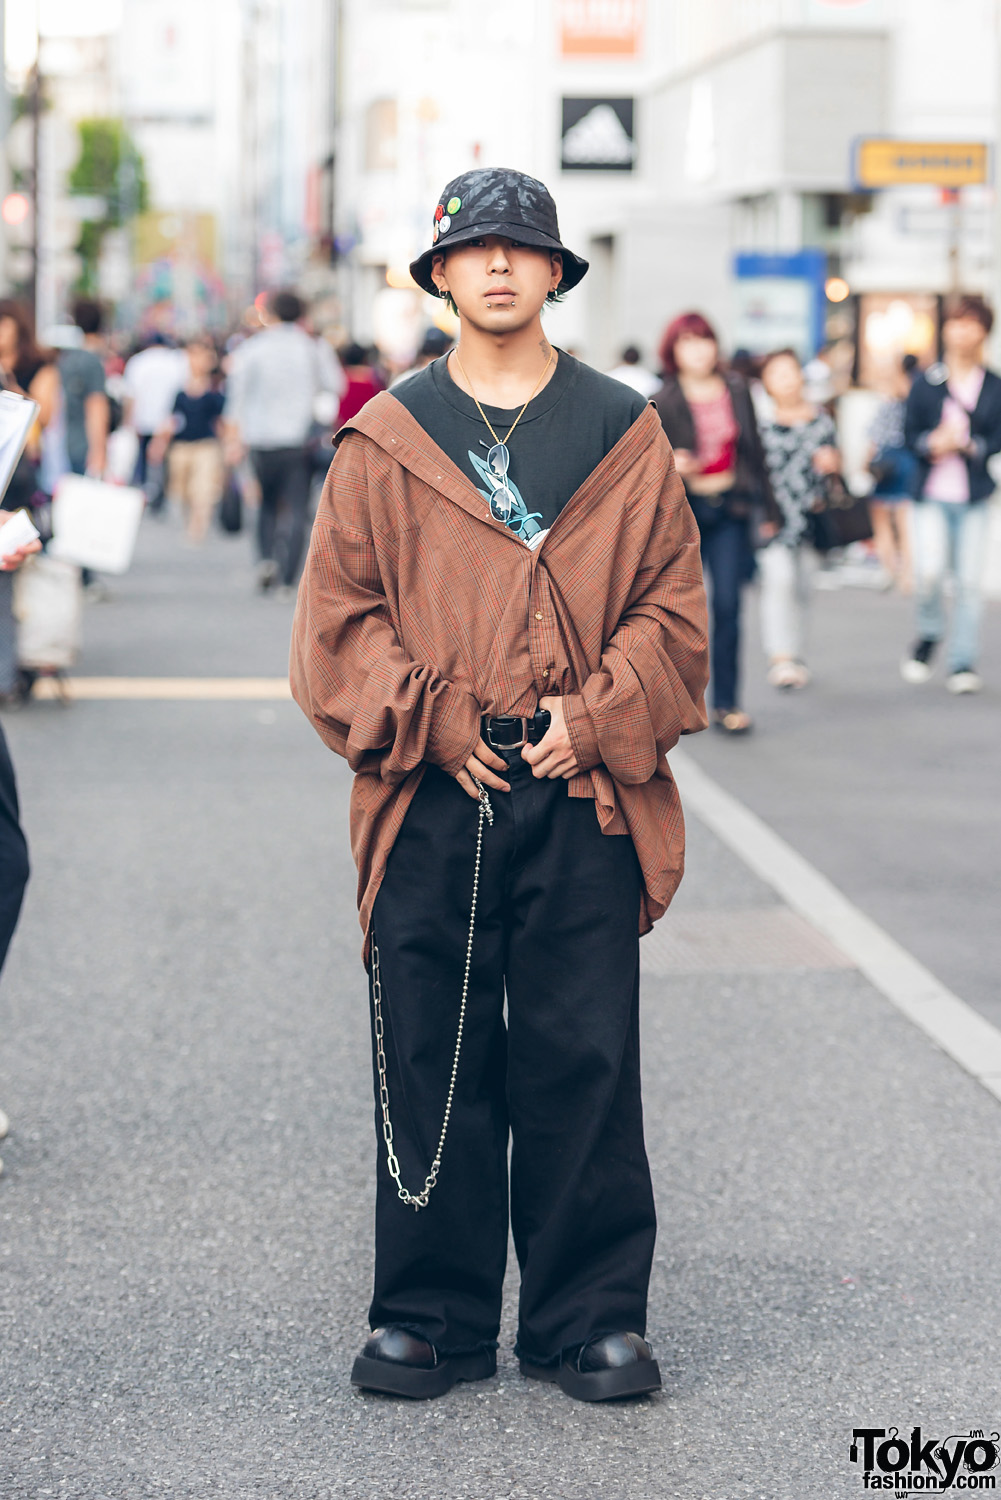 Harajuku Guy in Vintage Oversized Fashion w/ Demonia Platform Shoes